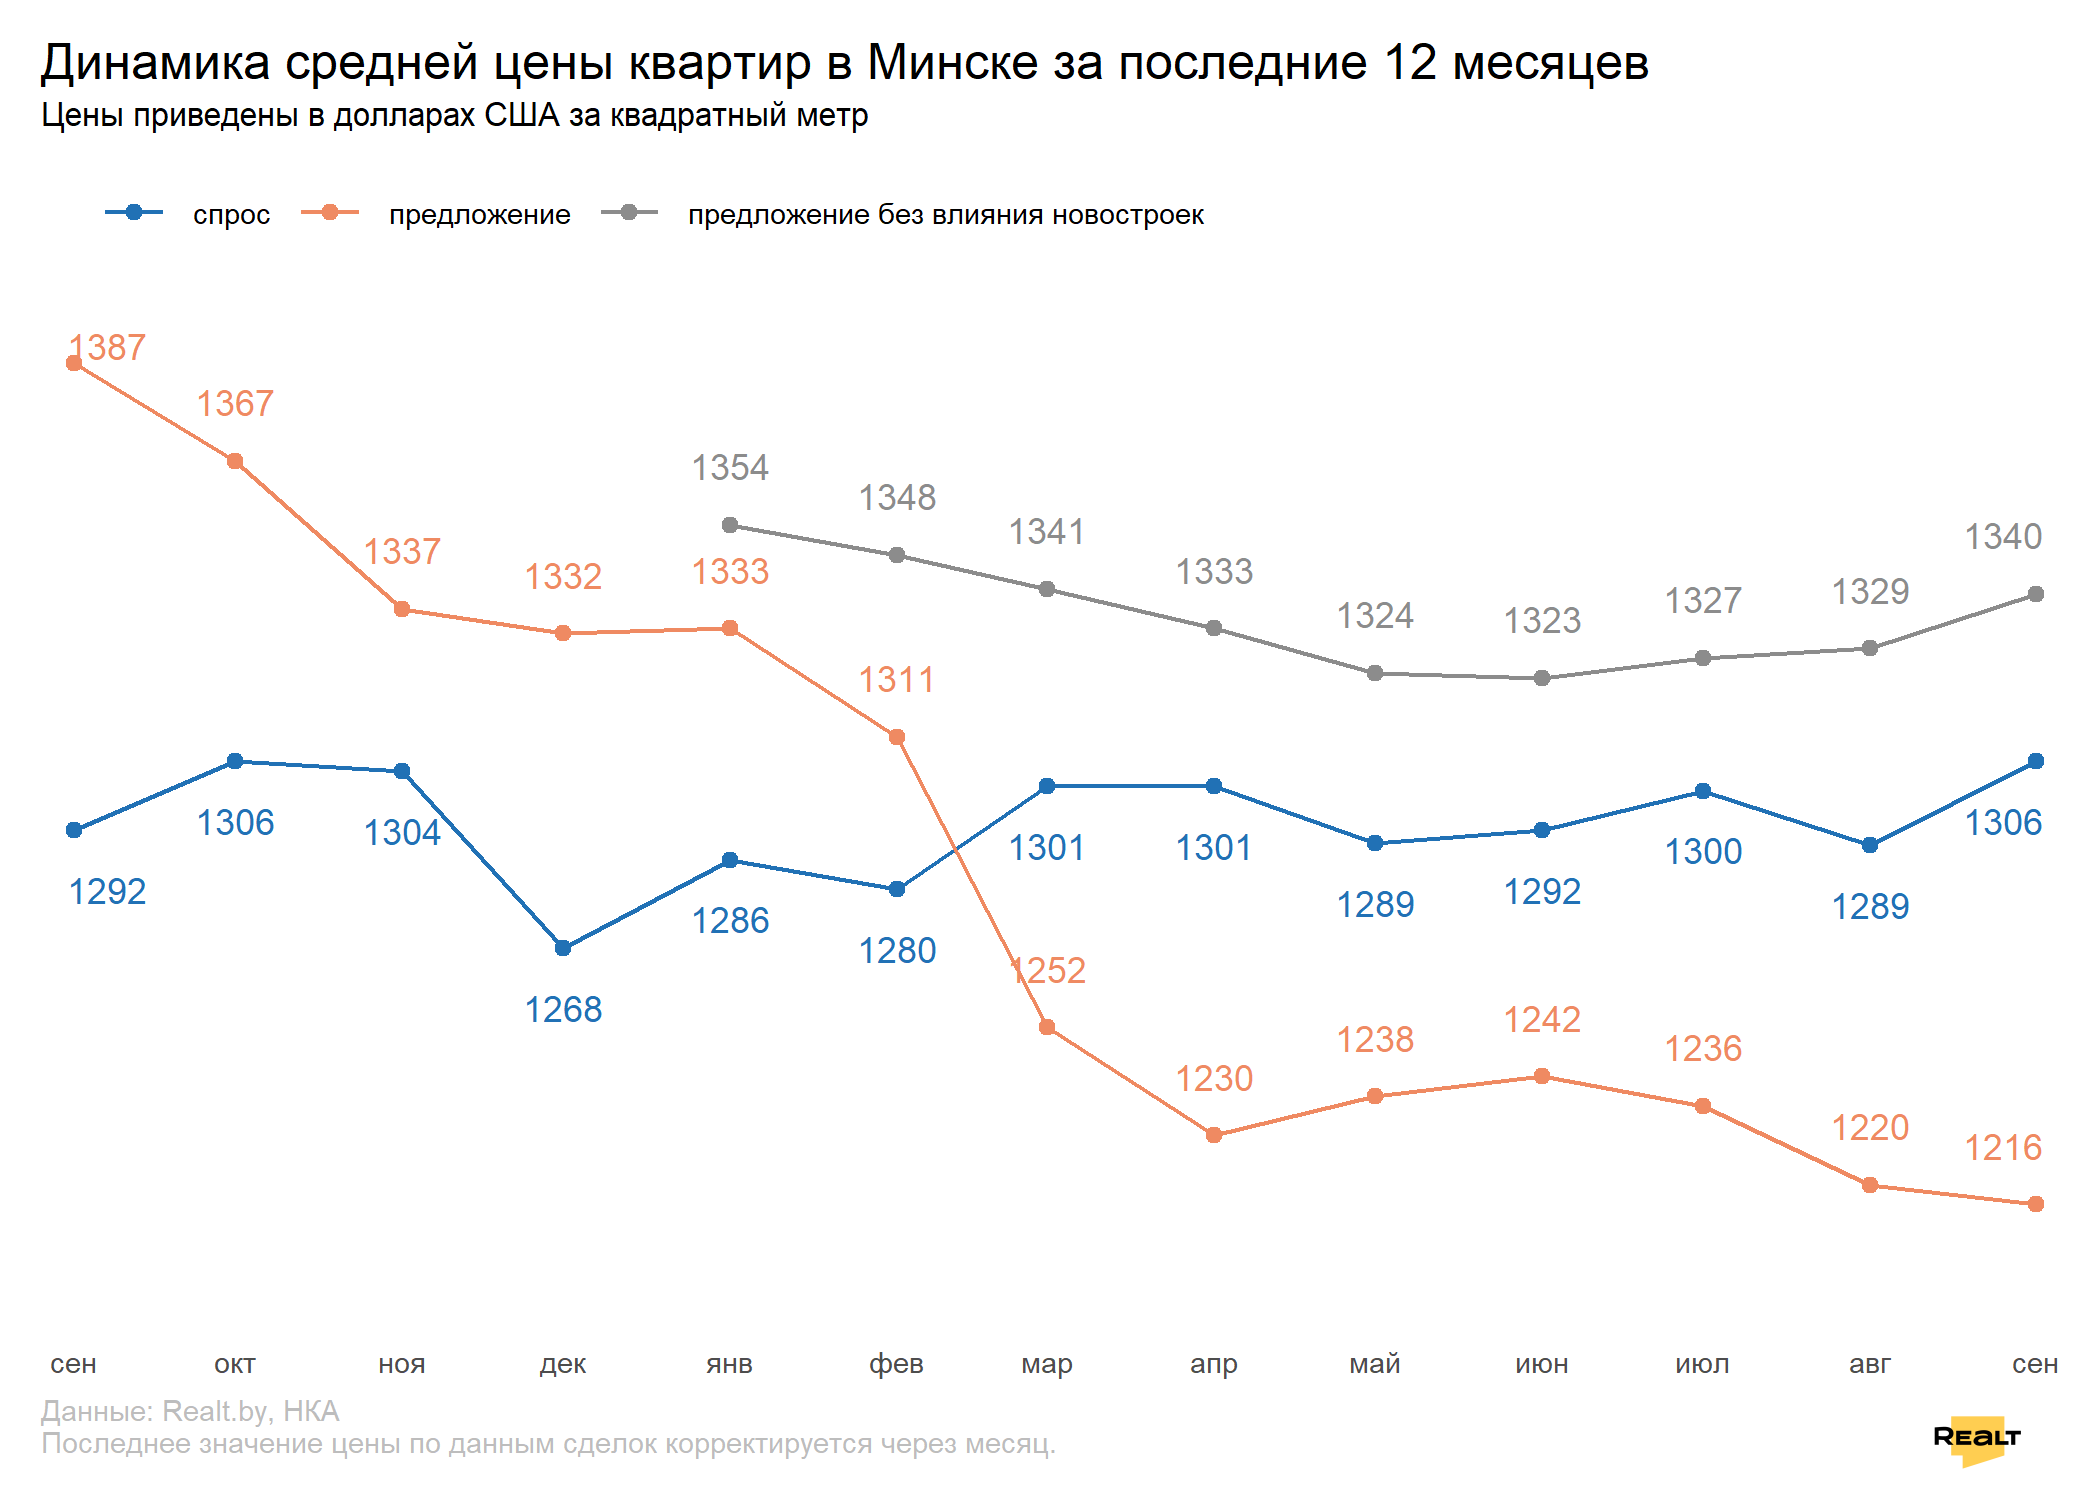 Спрос — высокий, цены — растут. Что происходило на рынке квартир Минска в сентябре (данные по реальным сделкам)